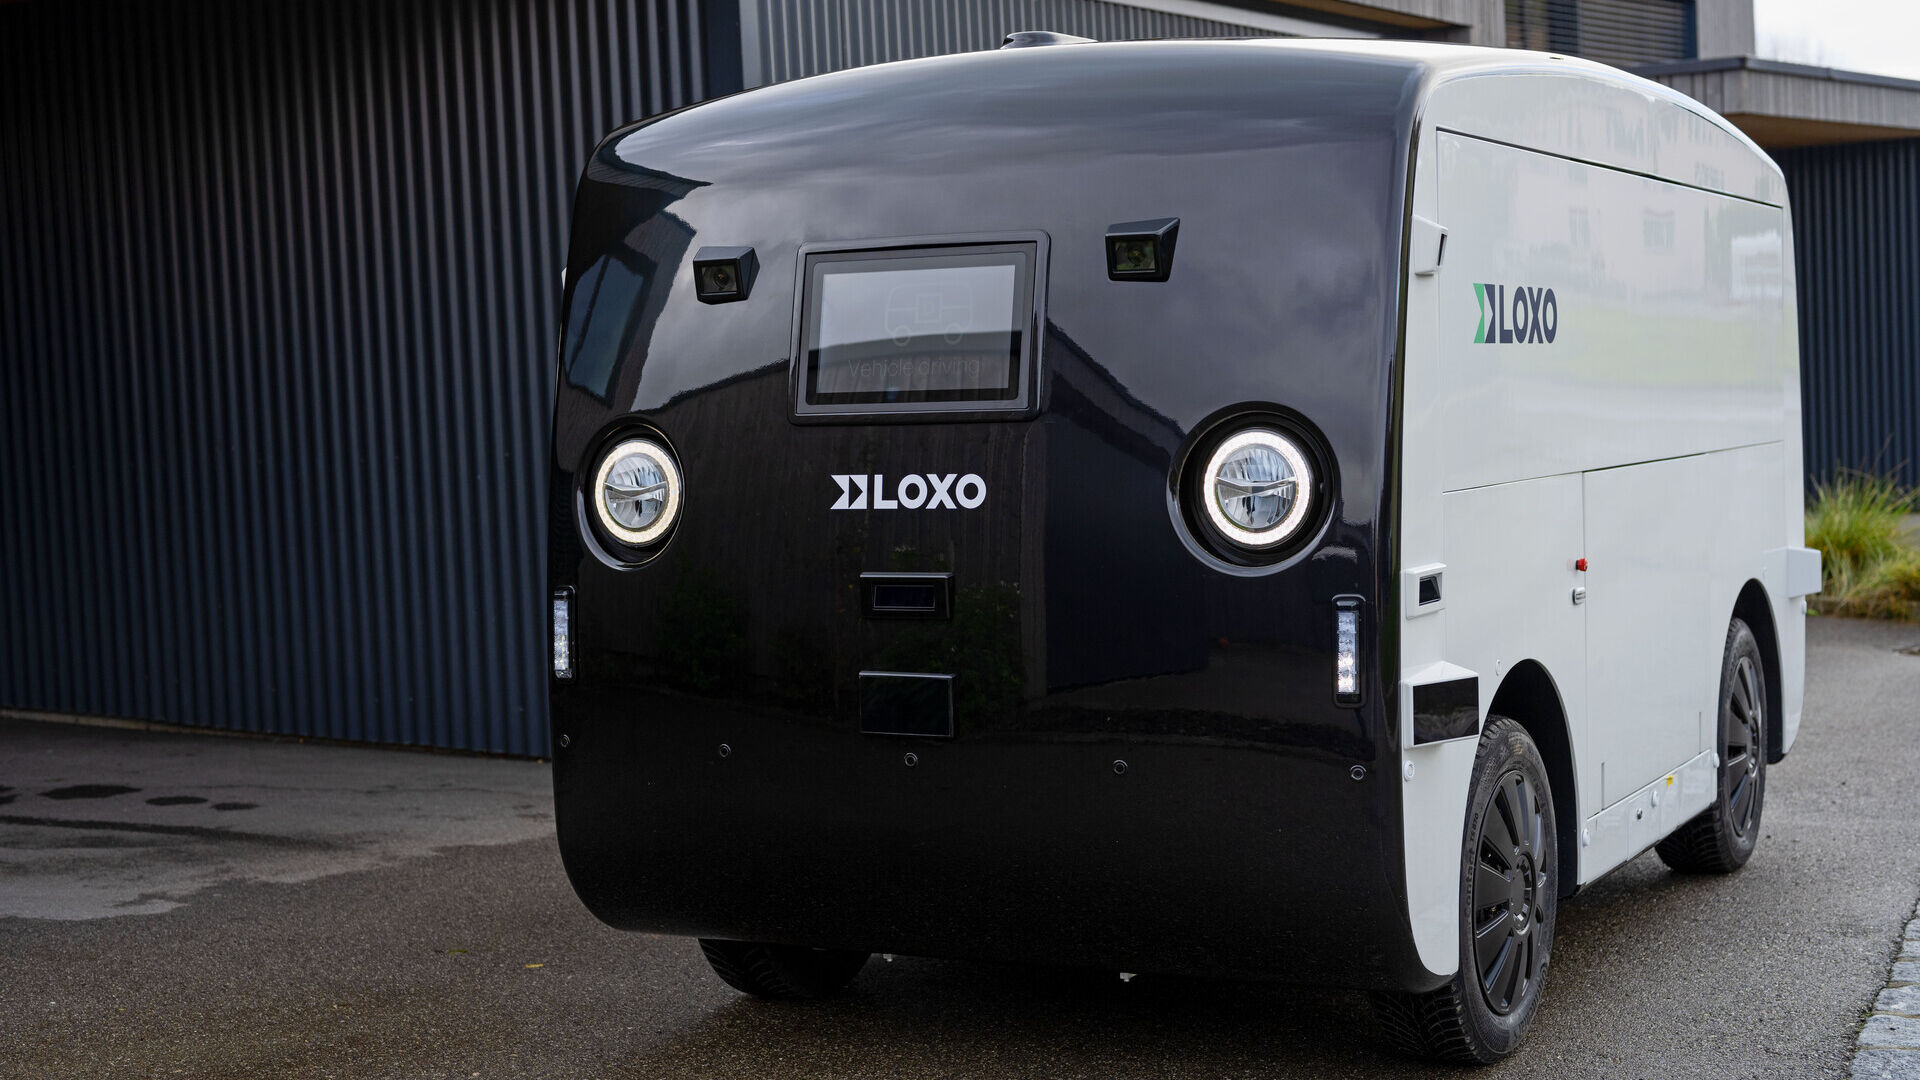 LOXO: Alpha เป็นรถตู้ไร้คนขับที่ผลิตในสวิตเซอร์แลนด์ทั้งหมด และนำเสนอในวันที่ 6 ธันวาคม 2022 ที่ Kursaal ใน Bern ในระหว่างการแถลงข่าวโดย LOXO สตาร์ทอัพ